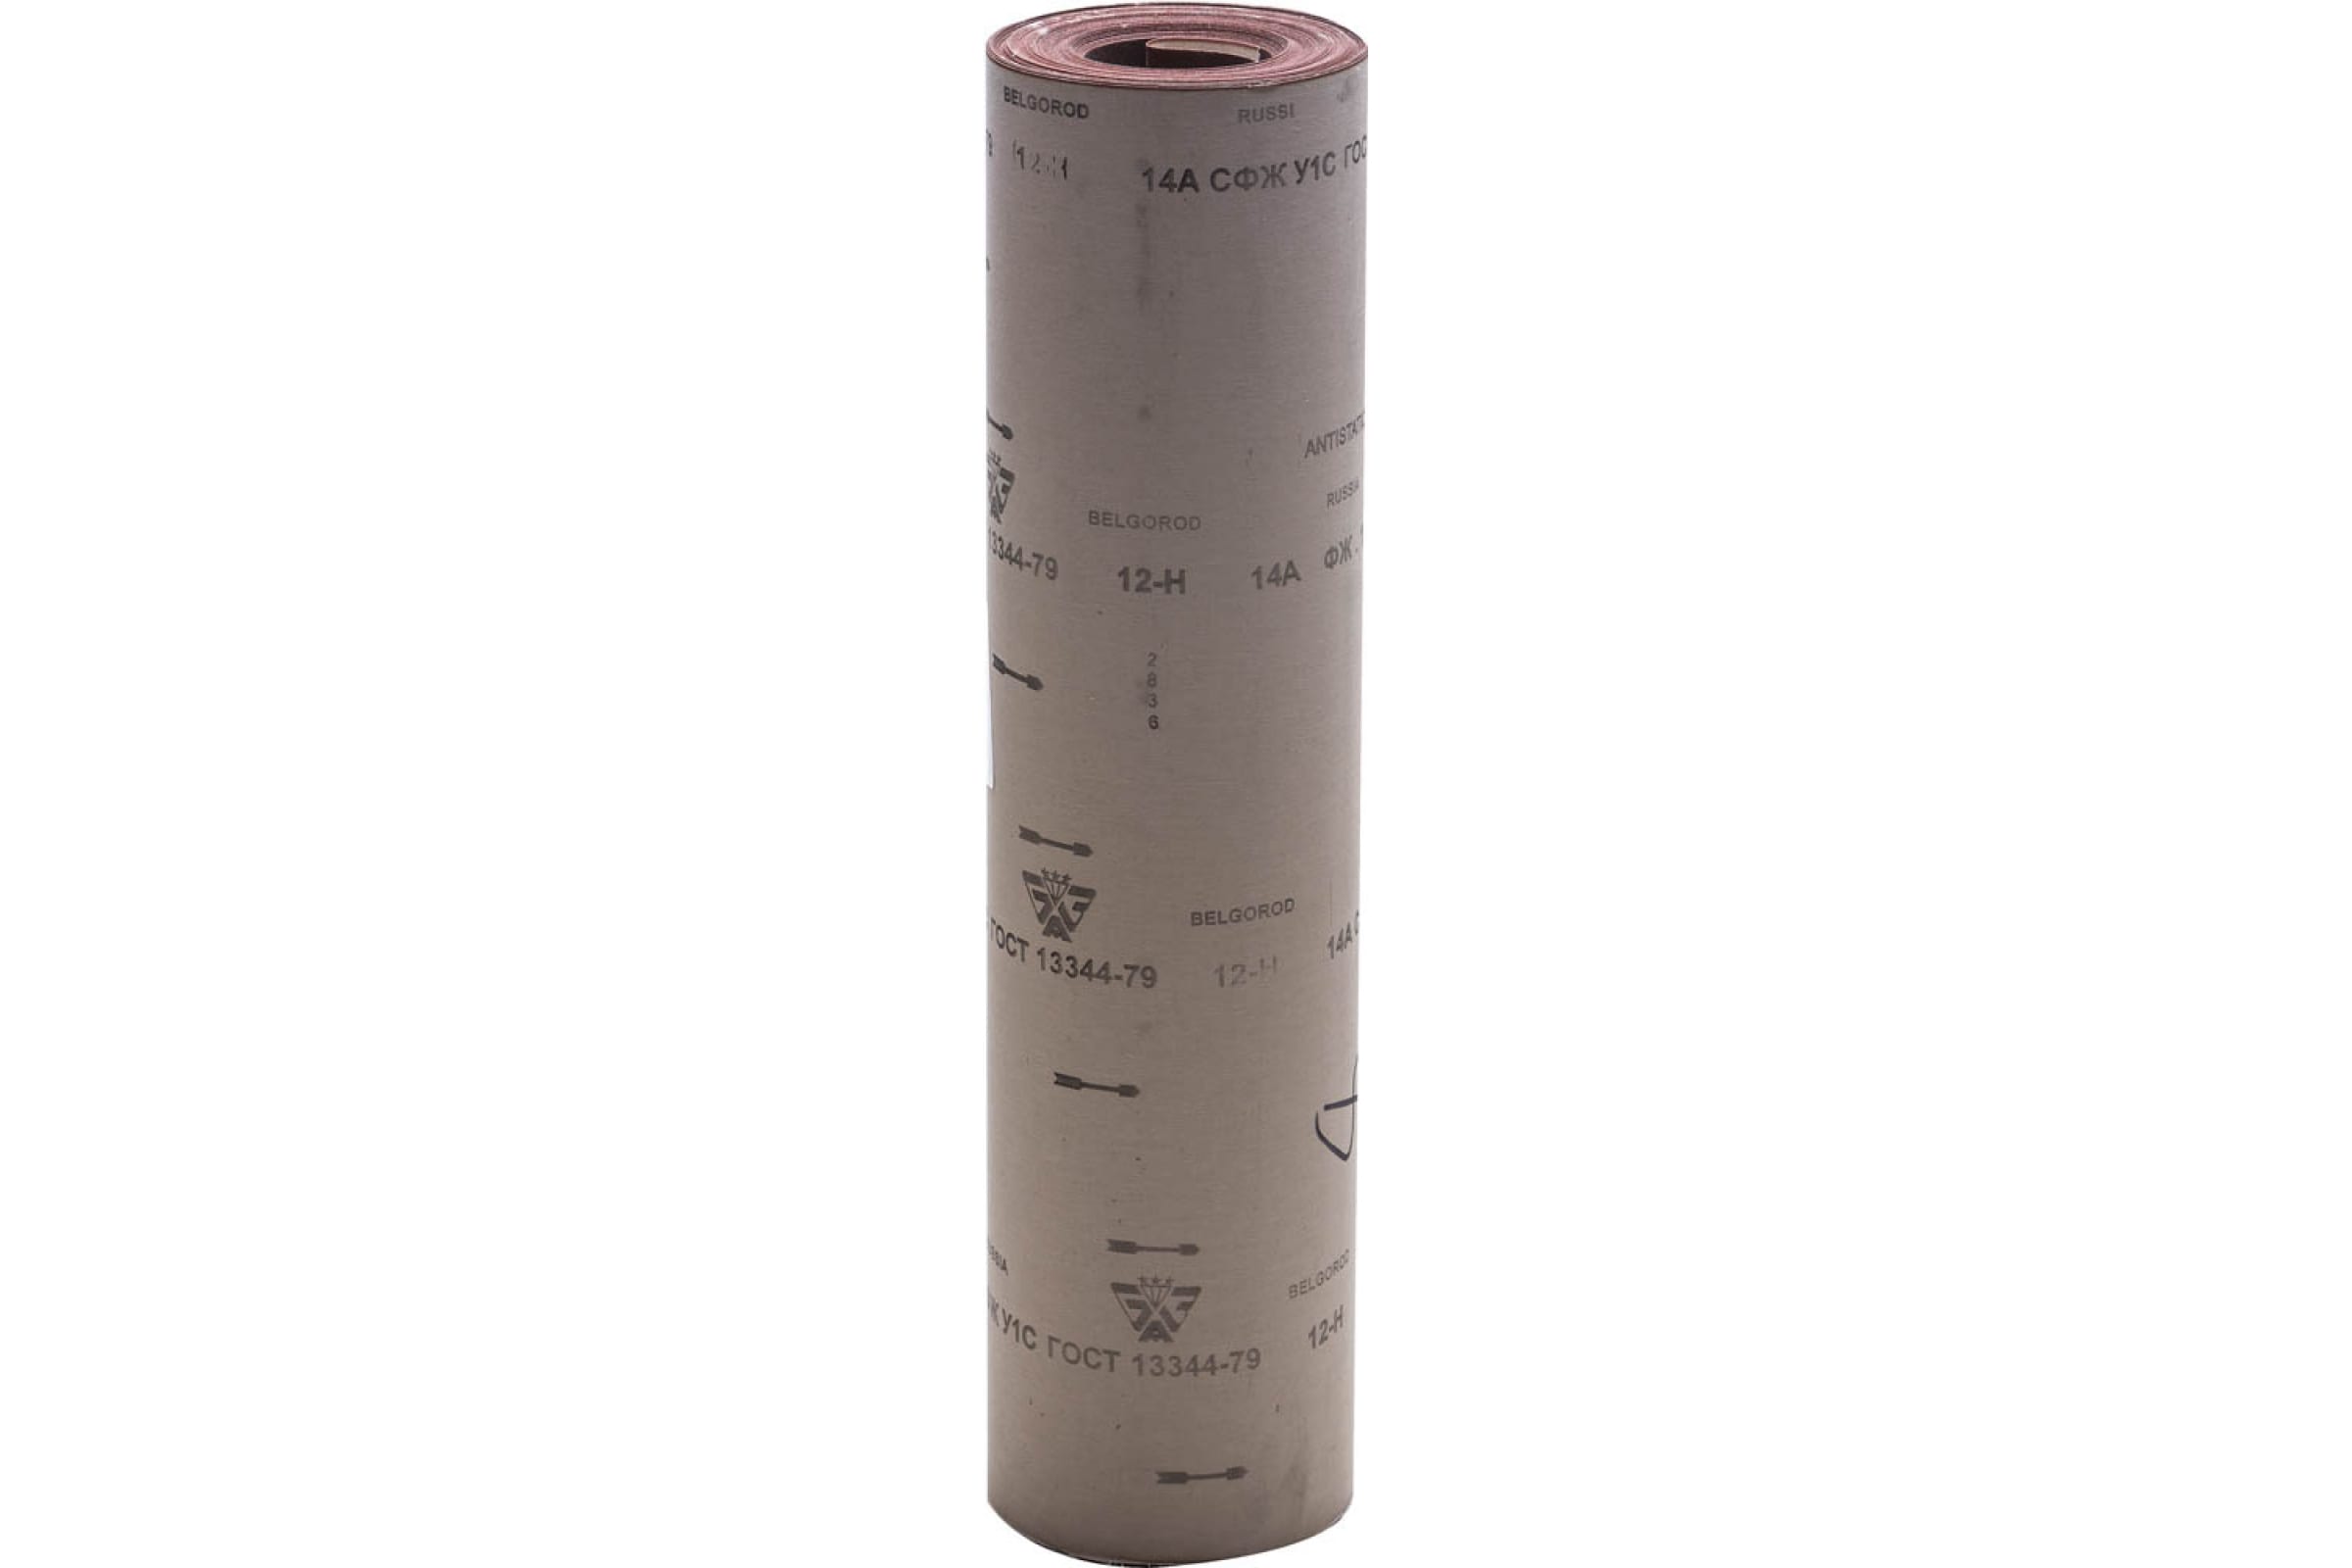 Рулон шлифовальный 14А 12-H (P100), 800 мм, на тканевой основе, водостойкий, 30 м, БАЗ